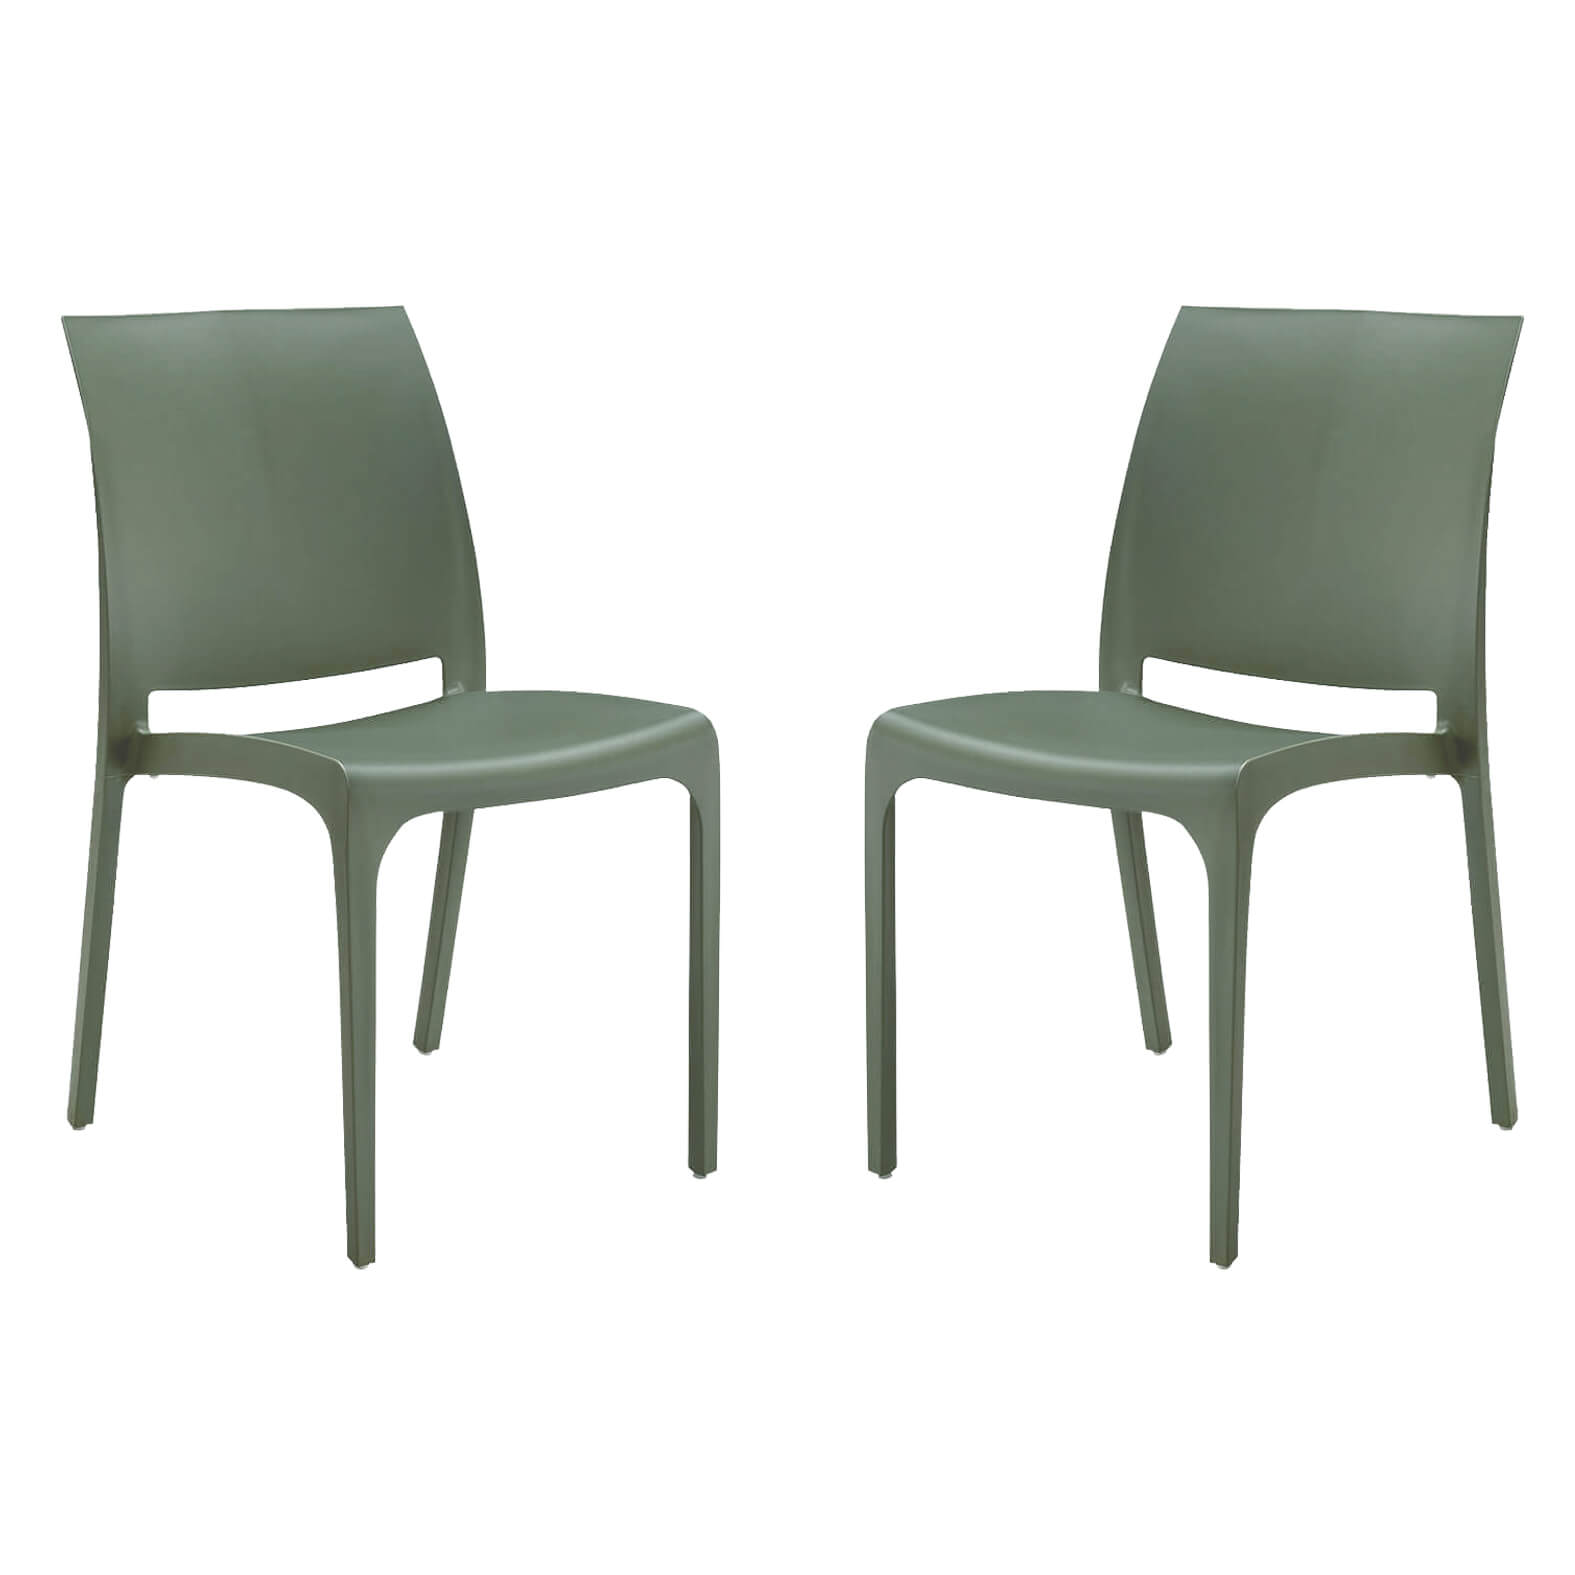 Milani Home set di 2 sedie poltrone da giardino in plastica design moderno colorata Verde Verde 46 x 80 x 54 cm